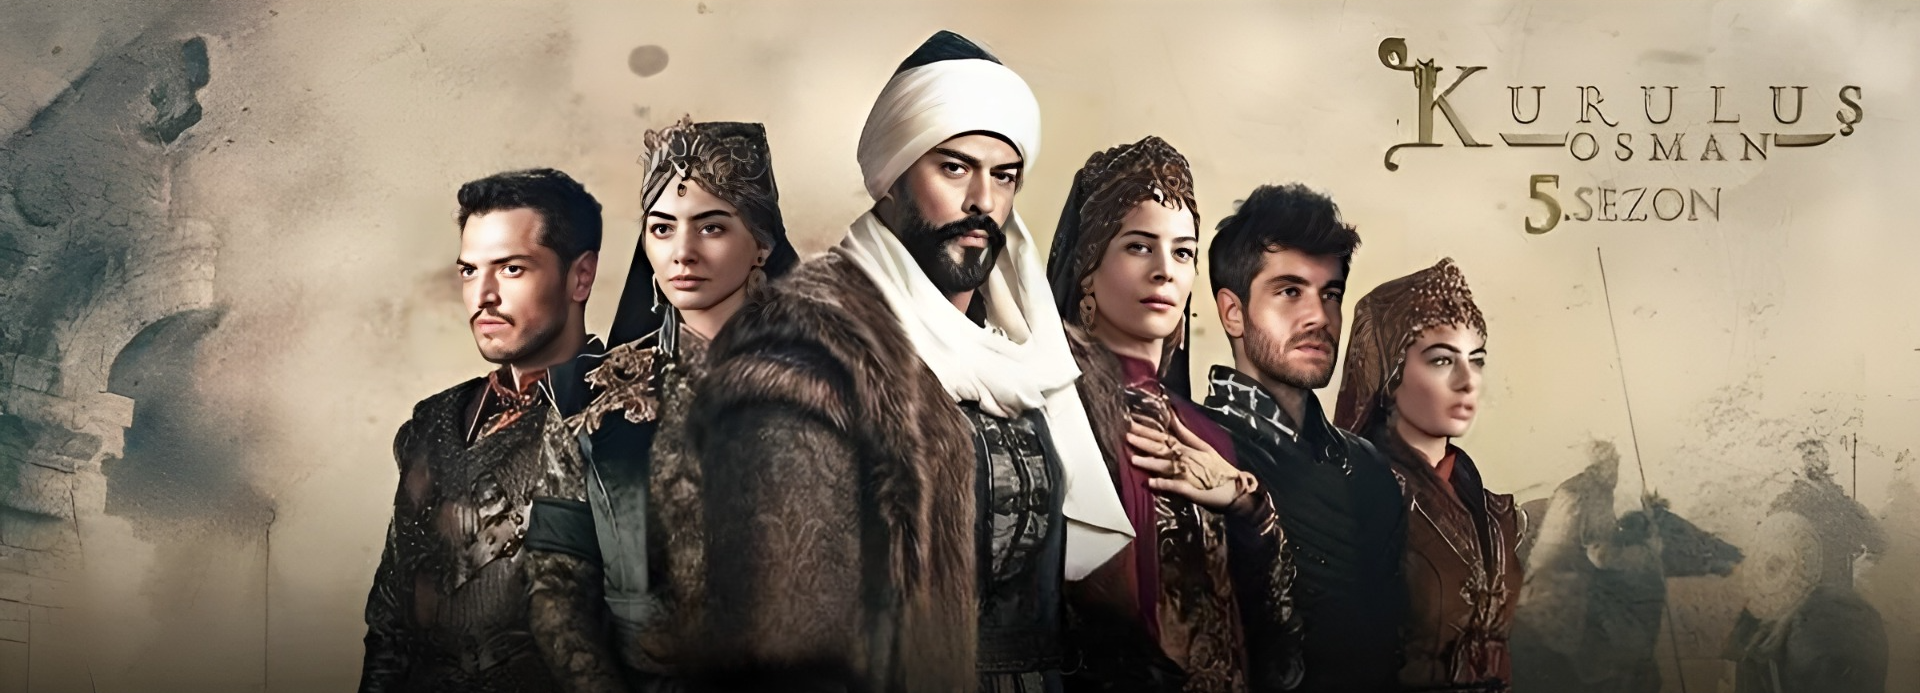 Kuruluş: Osman Season 5